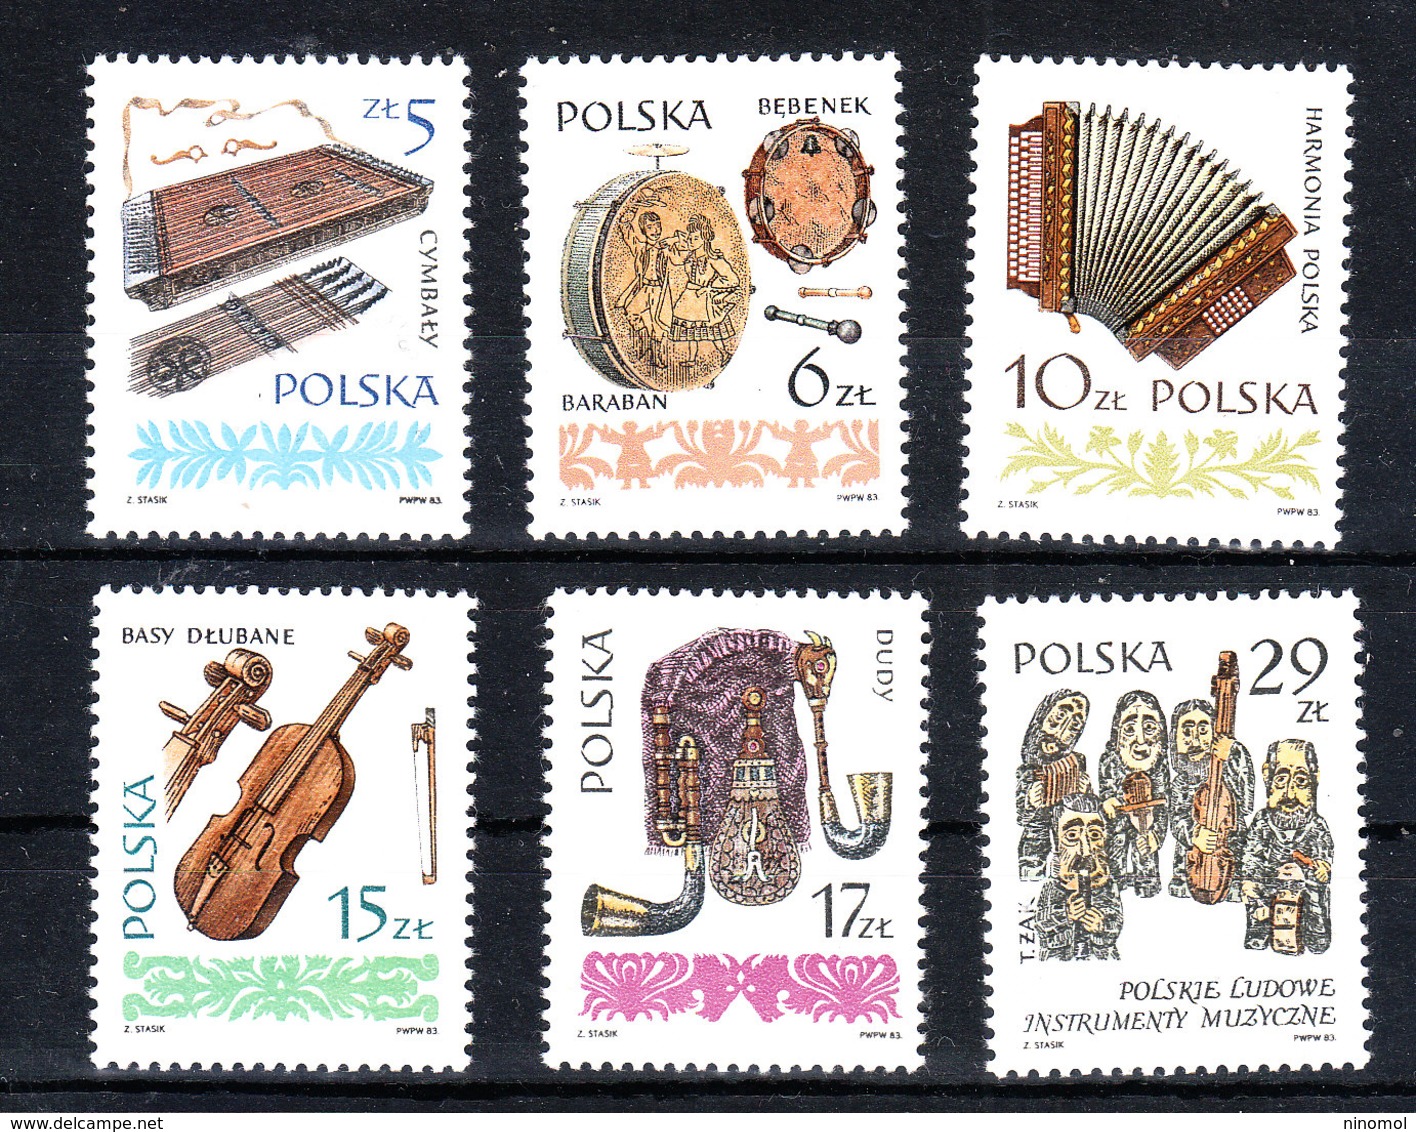 Polonia -1984. Timpani,fisarmonica,violino,cornamusa.Timpani, Accordion, Violin, Bagpipes, Orchestra Wood Sculpture MNH - Musica